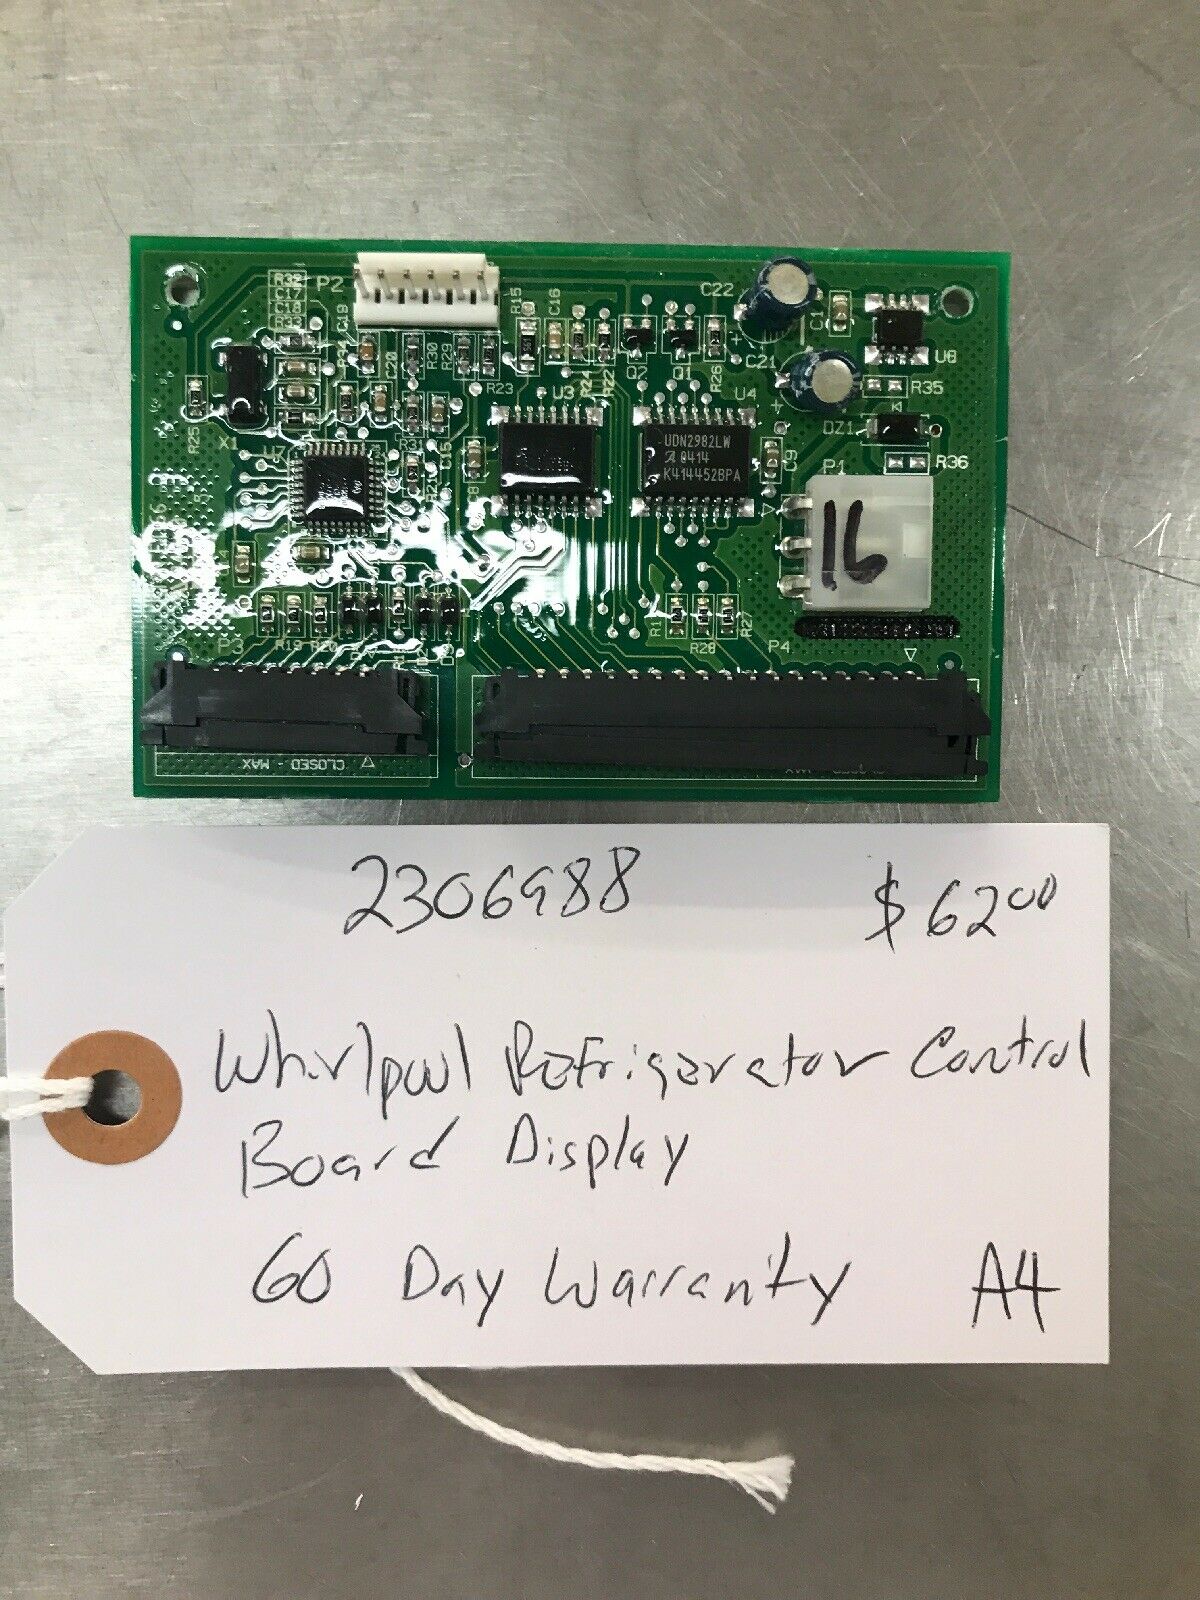 2306988 Whirlpool Refrigerator Control Board. 60 Day Warranty